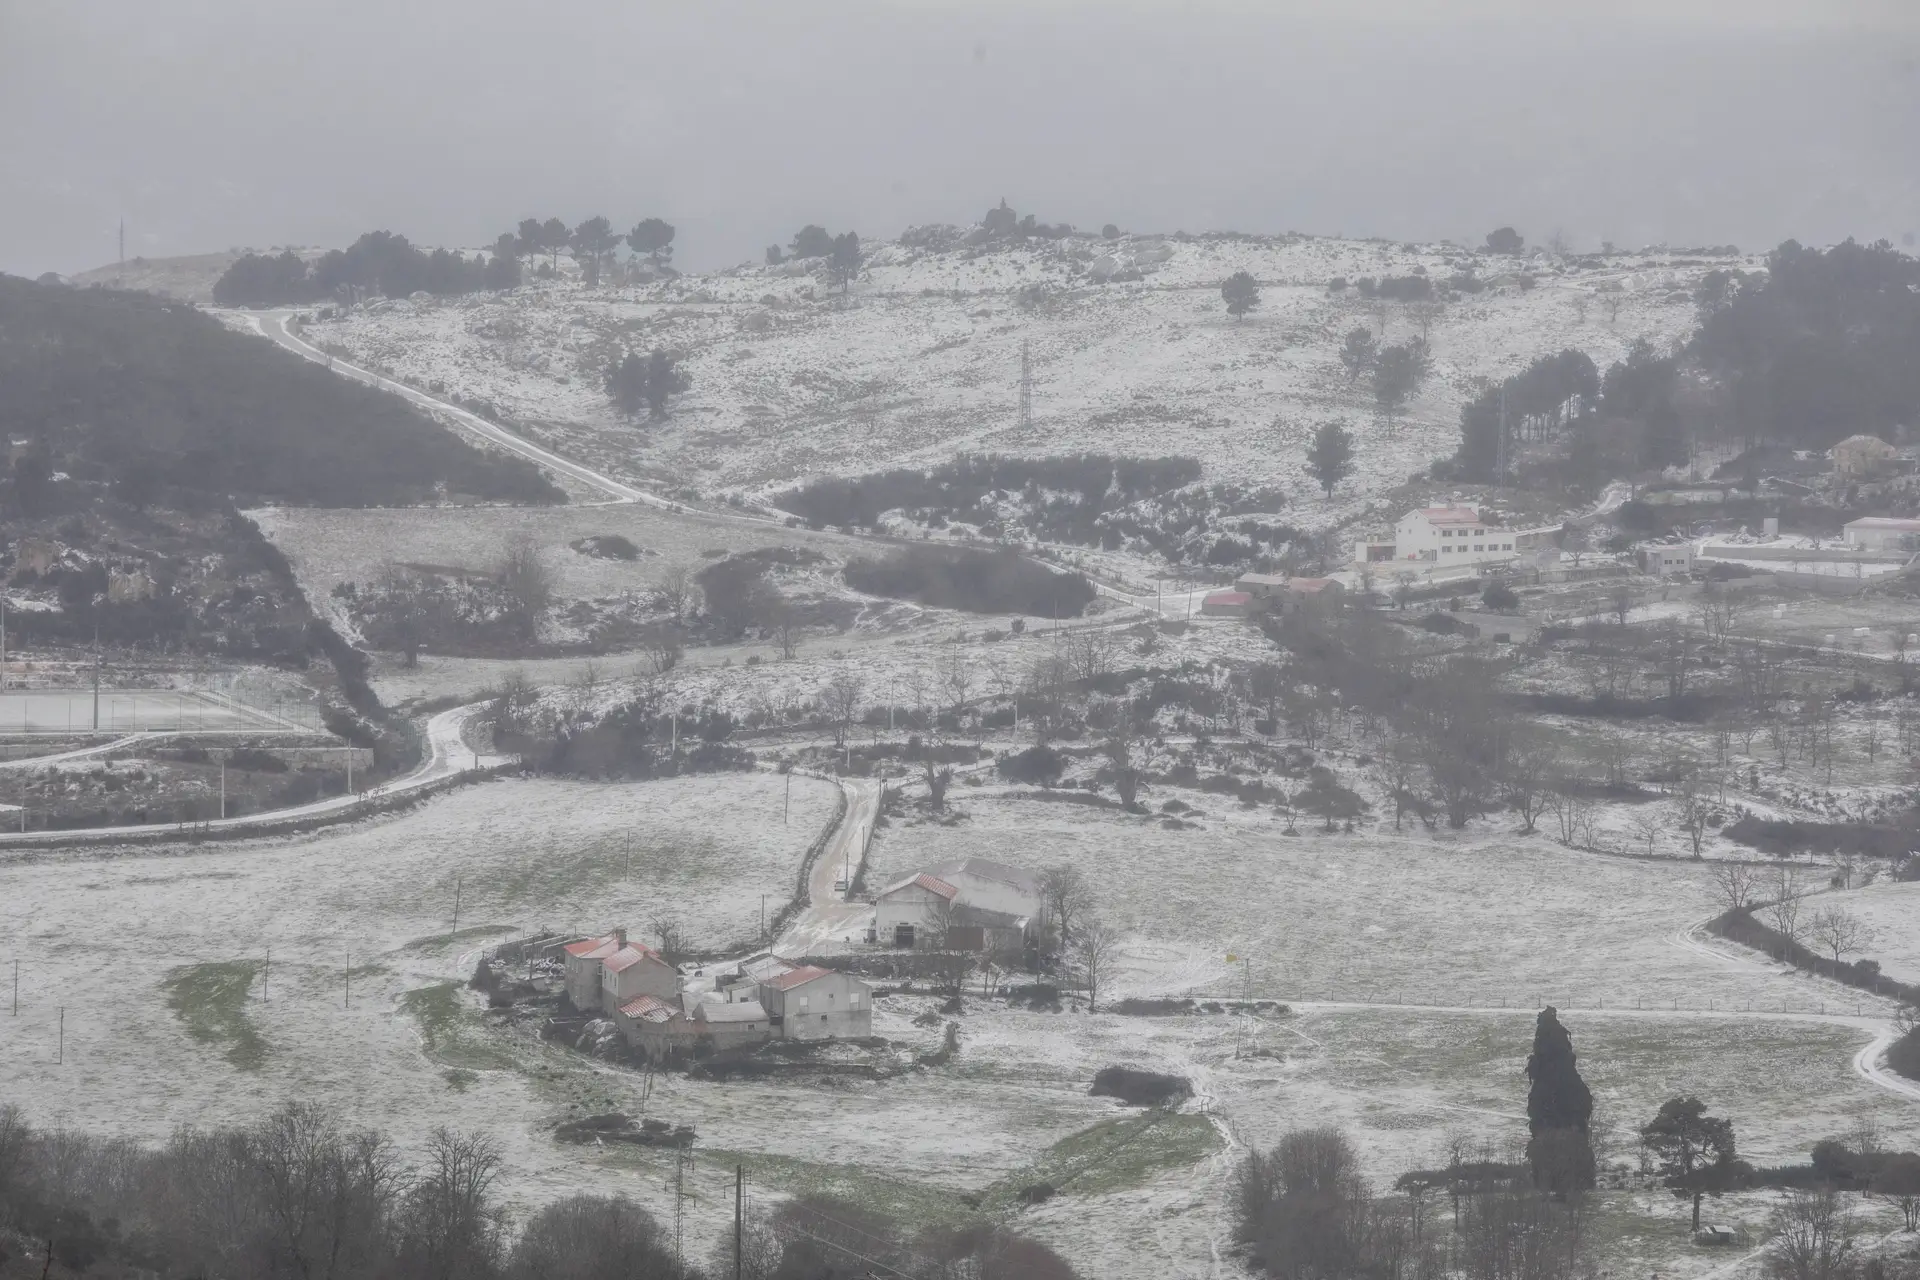 Guarda e Castelo Branco sob aviso amarelo no domingo e 2.ª feira devido à queda de neve